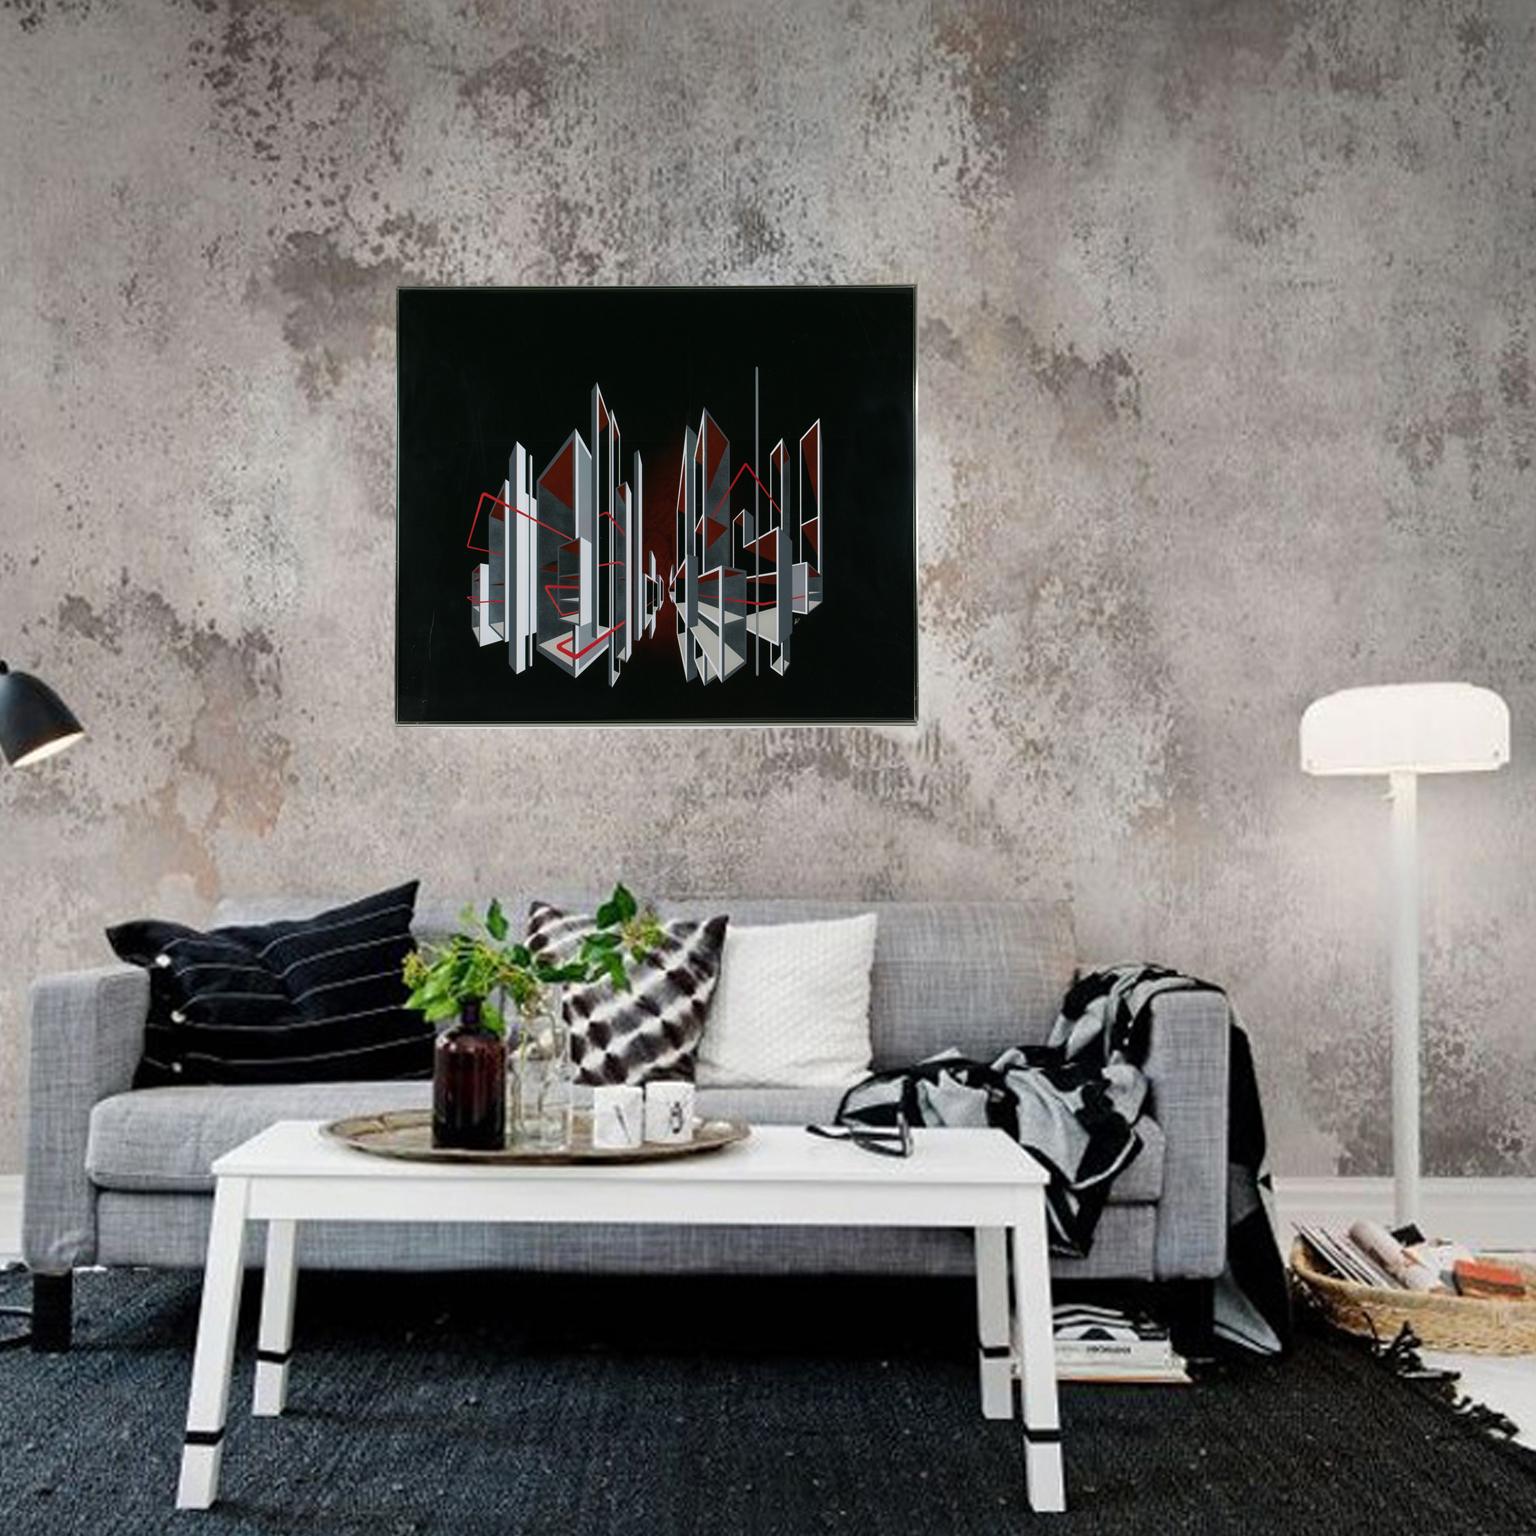 Eine eindrucksvolle Komposition des amerikanischen Künstlers L. L. Long aus dem Jahr 1980. Das Kunstwerk zeigt ein kinetisches, optisches, geometrisches Op-Art-Stadtbild, das mit Sprühfarbe auf eine Lucite- oder Plexiglasplatte aufgebracht wurde.